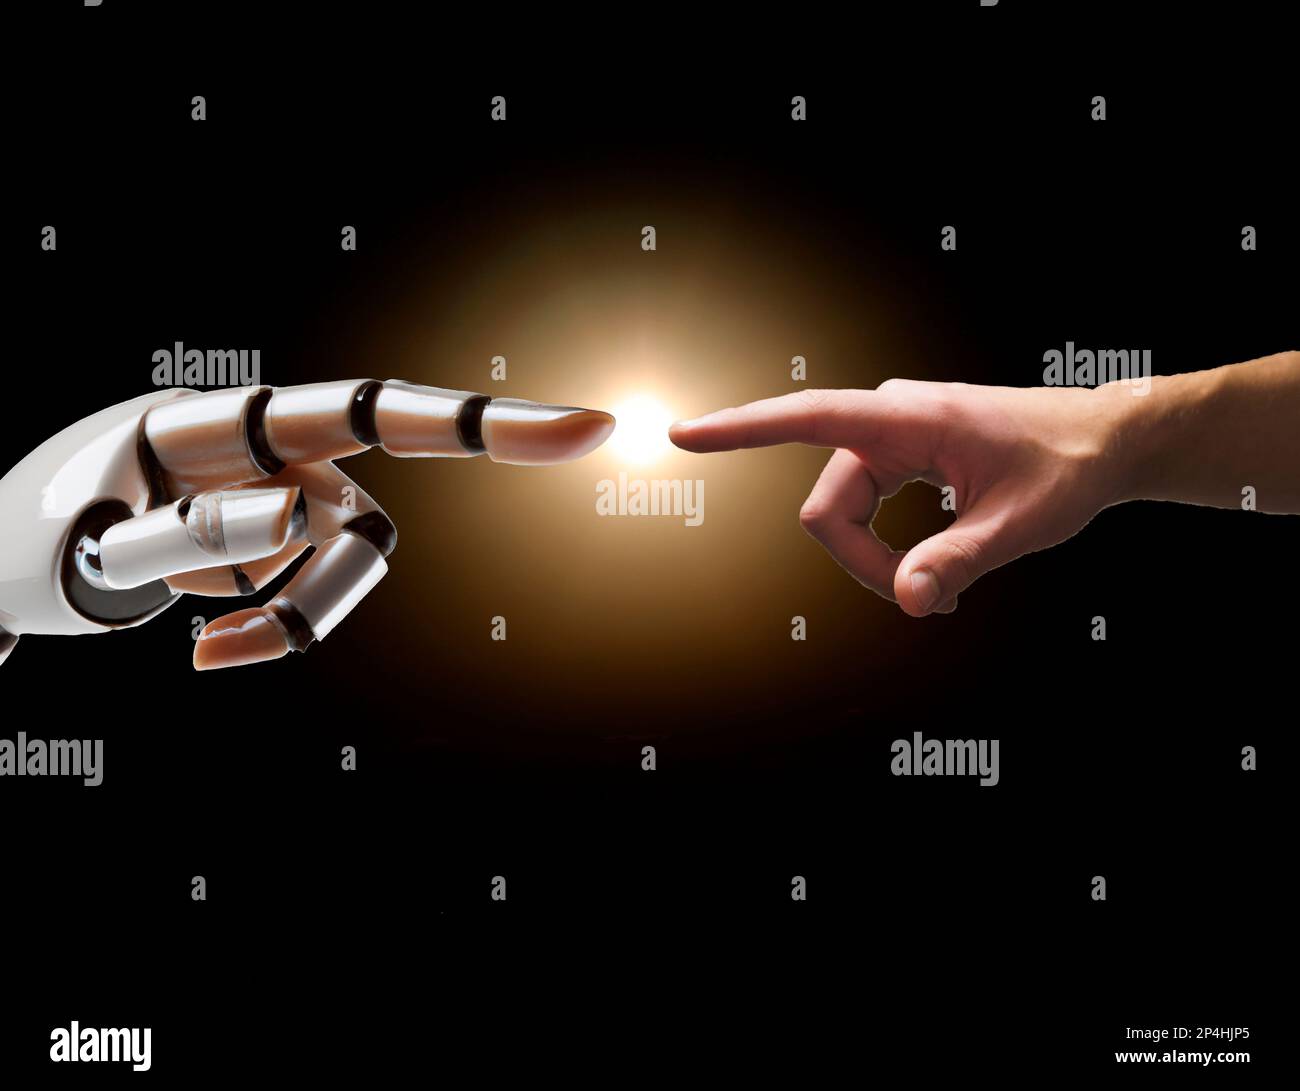 Une main de robot pointe vers une main humaine. Concept d'intelligence artificielle. Banque D'Images